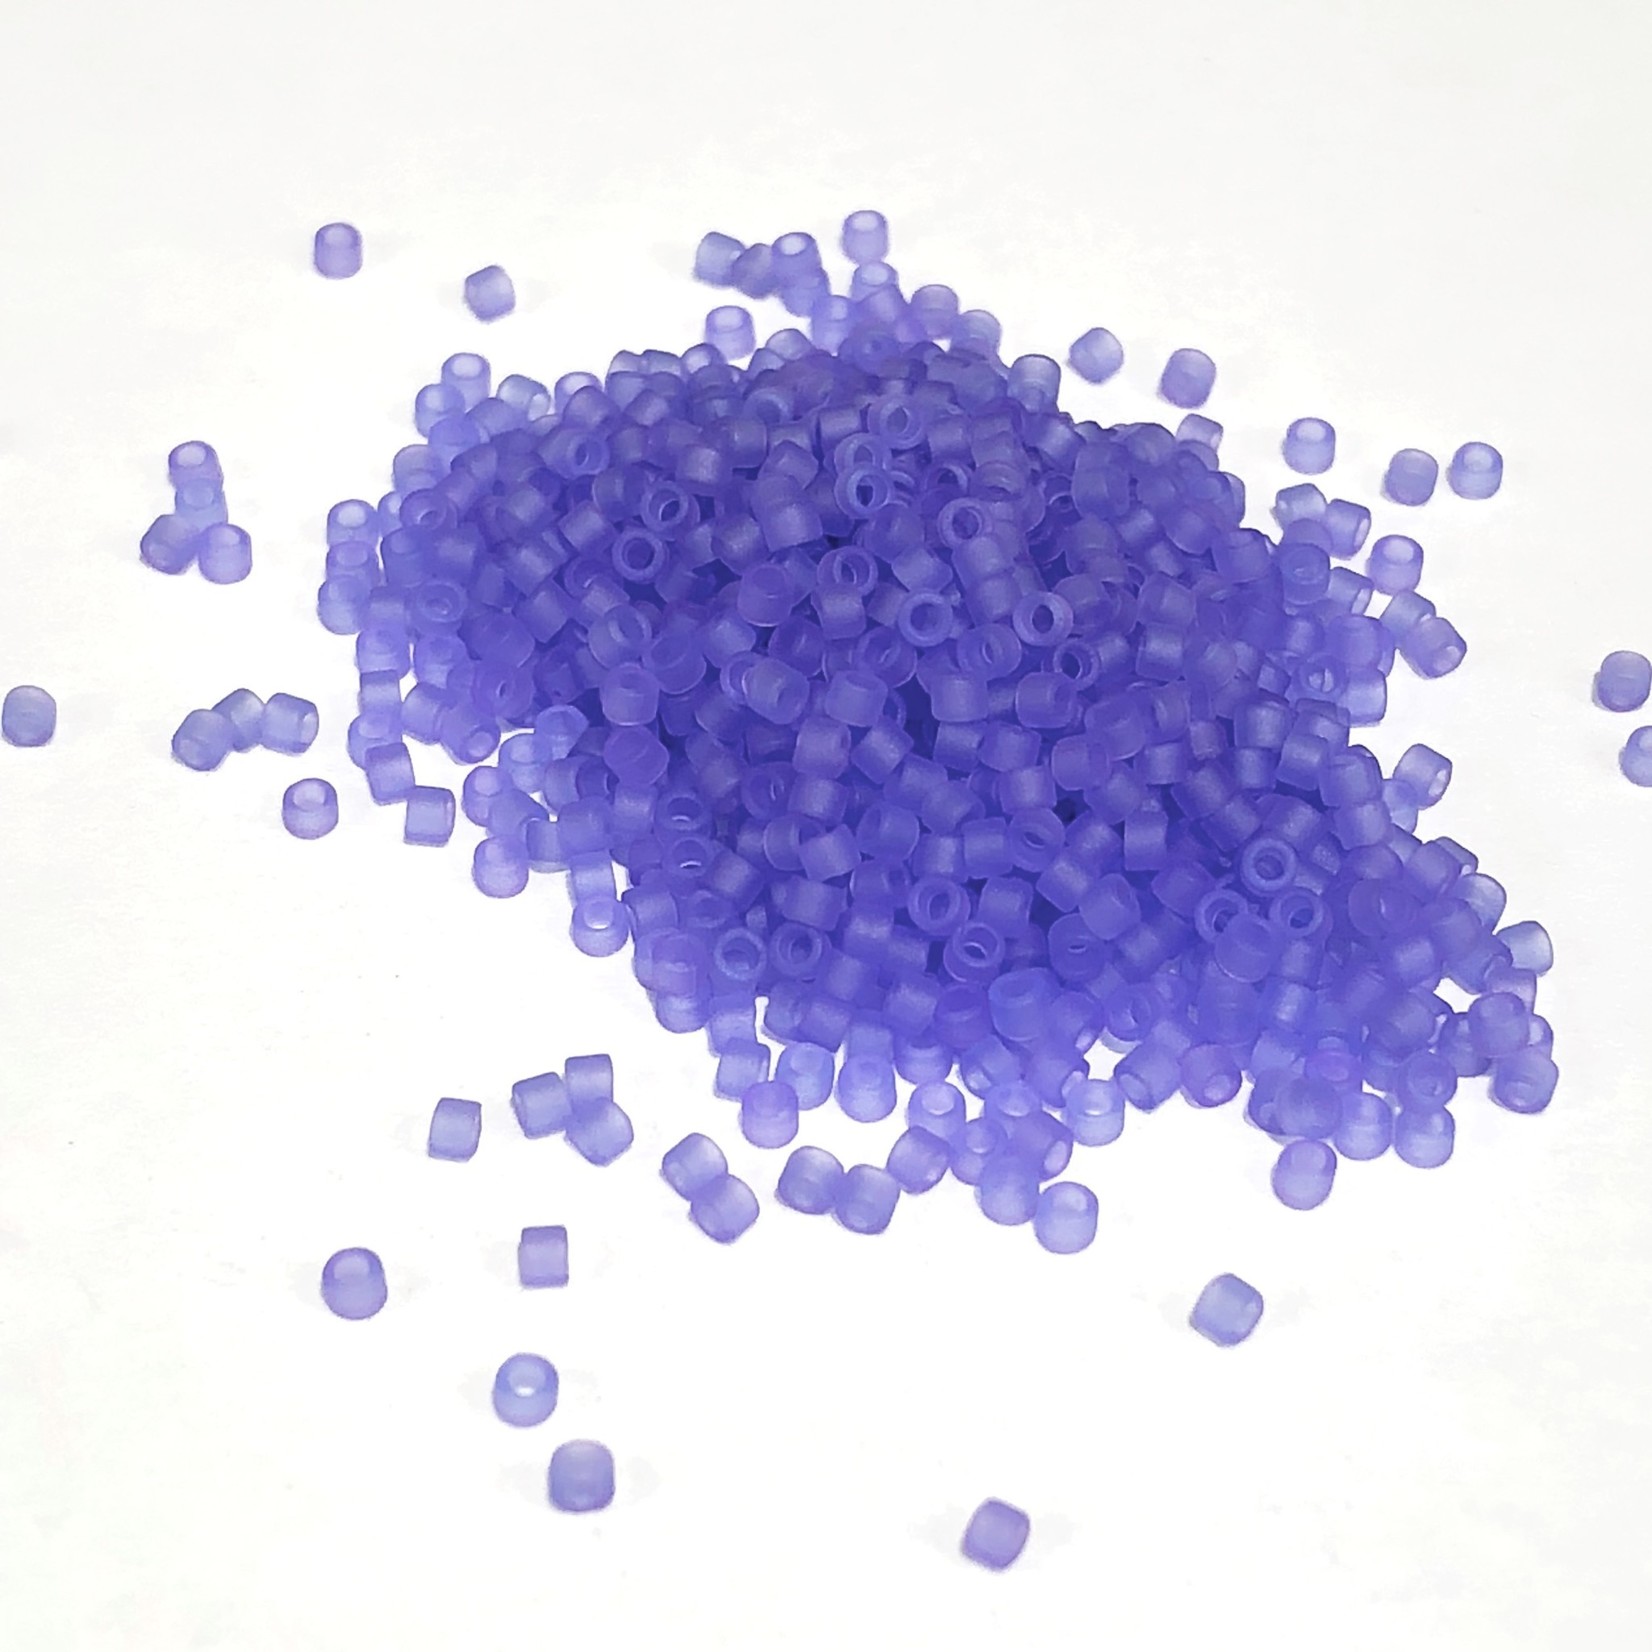 MIYUKI Delica 11-0 Dyed Matte Purple 10g